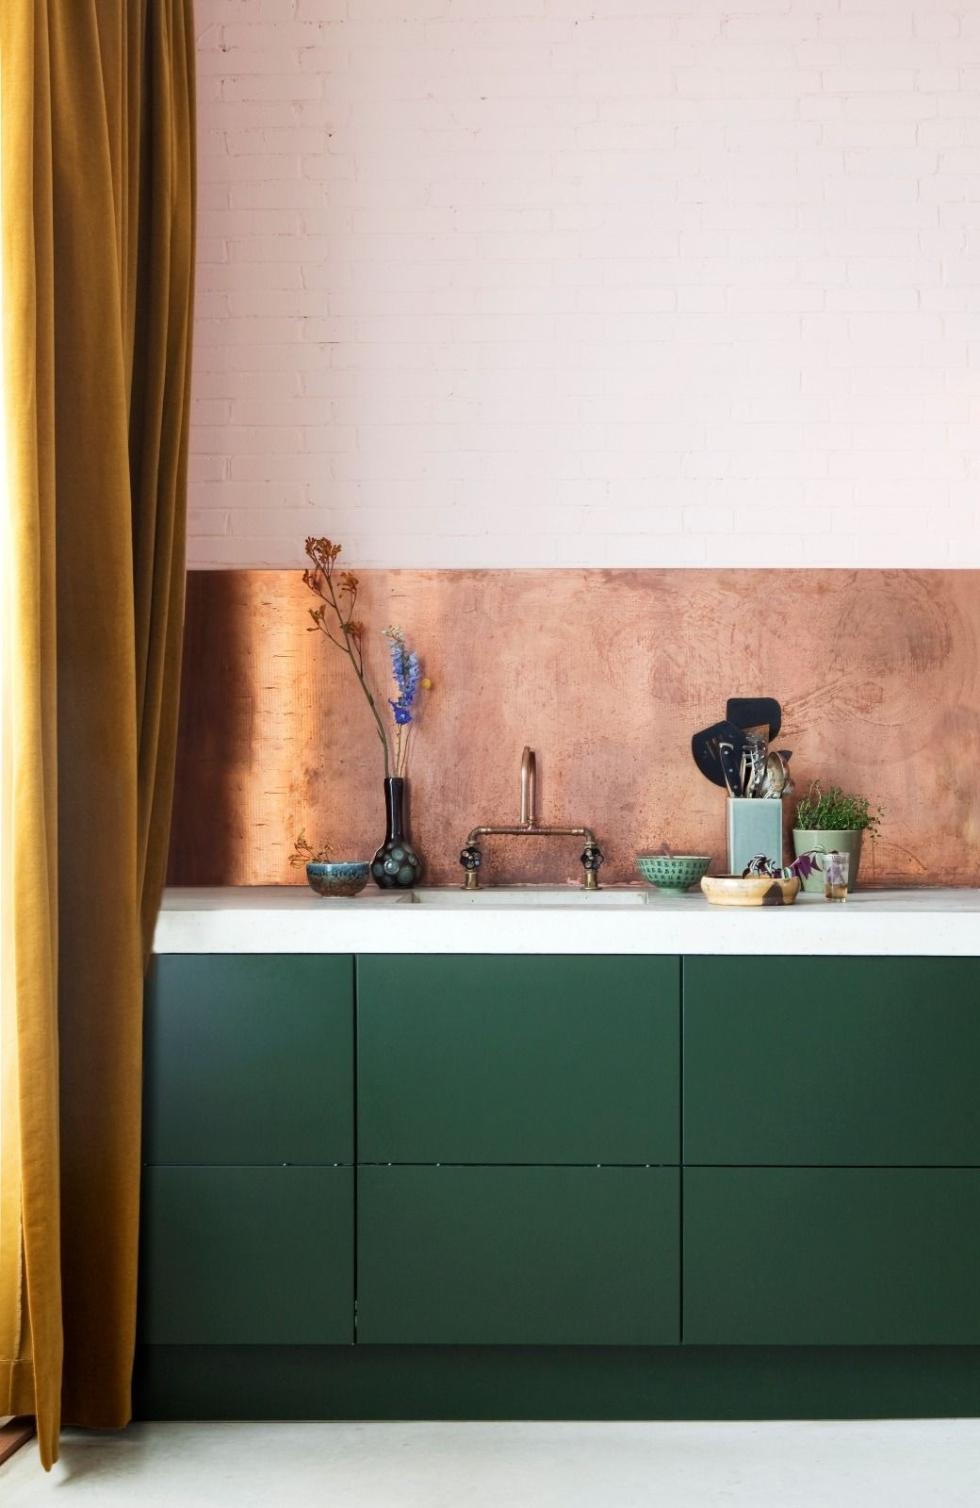 Grüne Küche mit Kupferpaneel.jpg